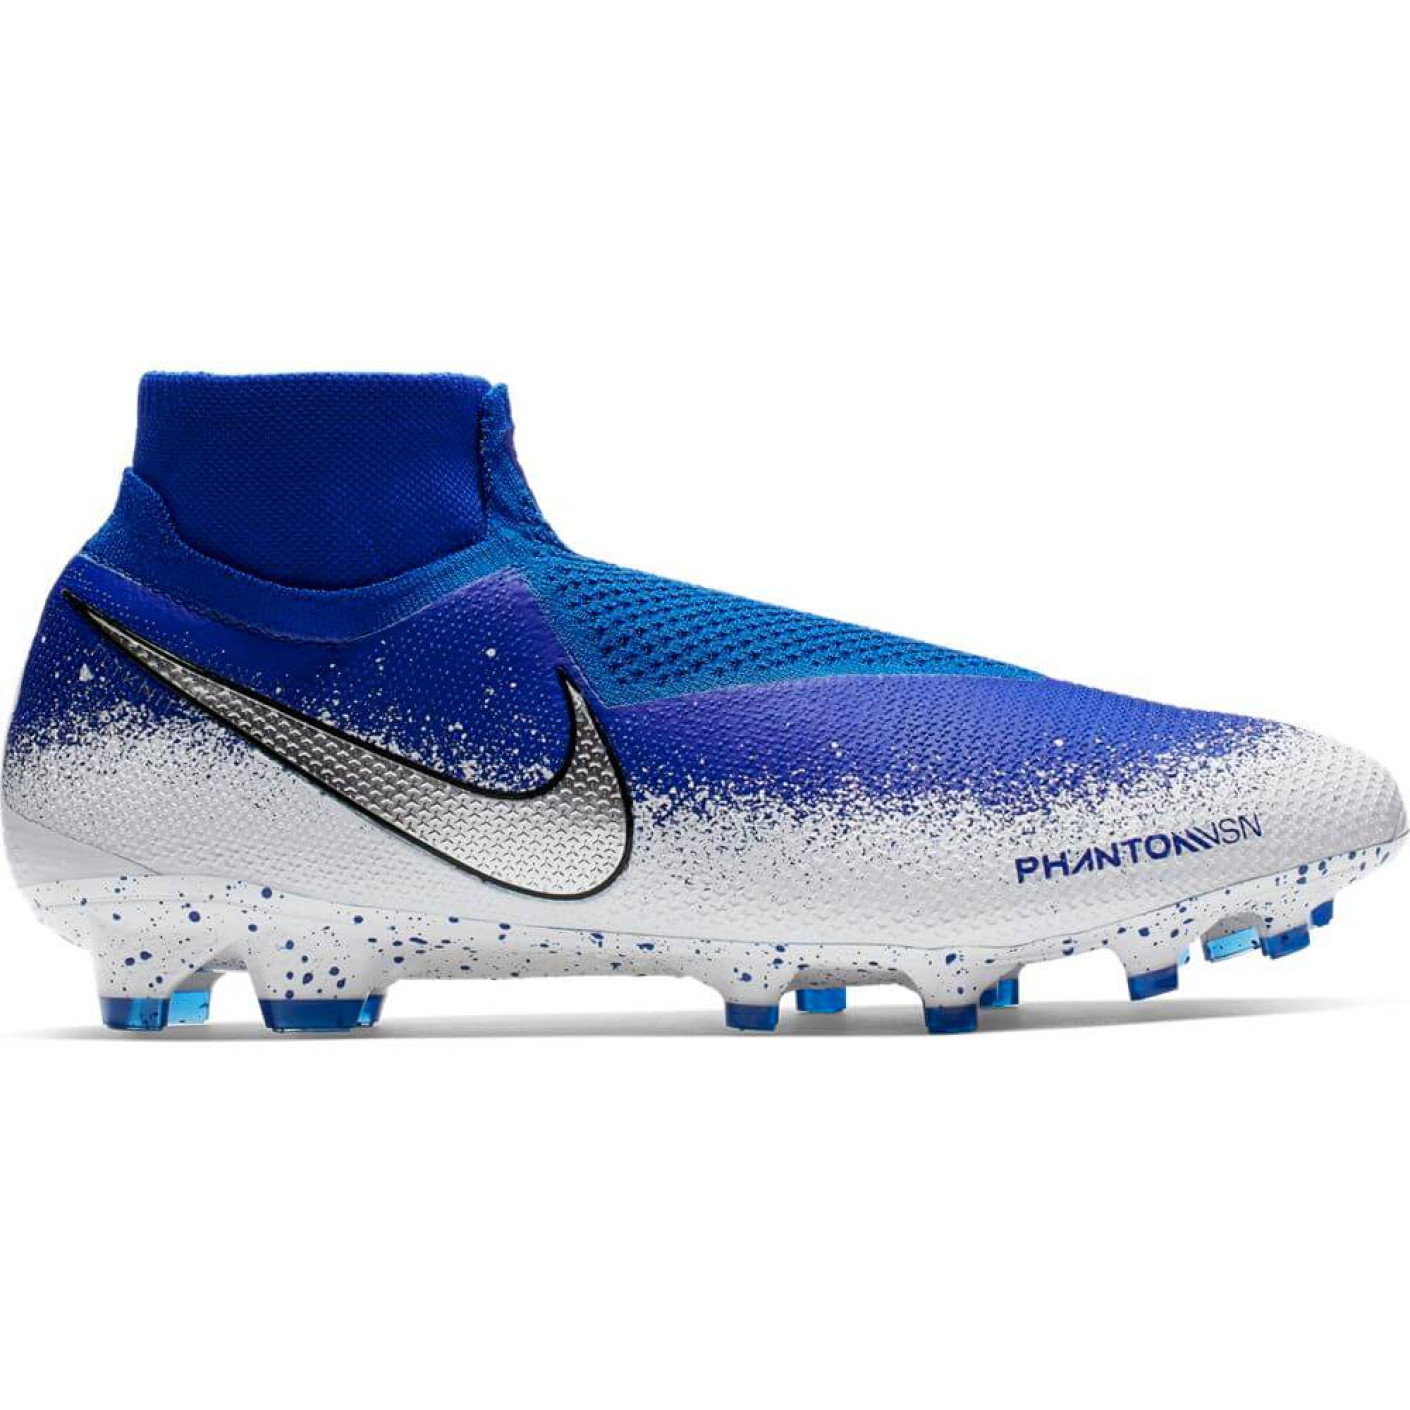 zoom definitief Regeneratie Nike PHANTOM VSN ELITE DF FG Voetbalschoenen Blauw Zilver Wit